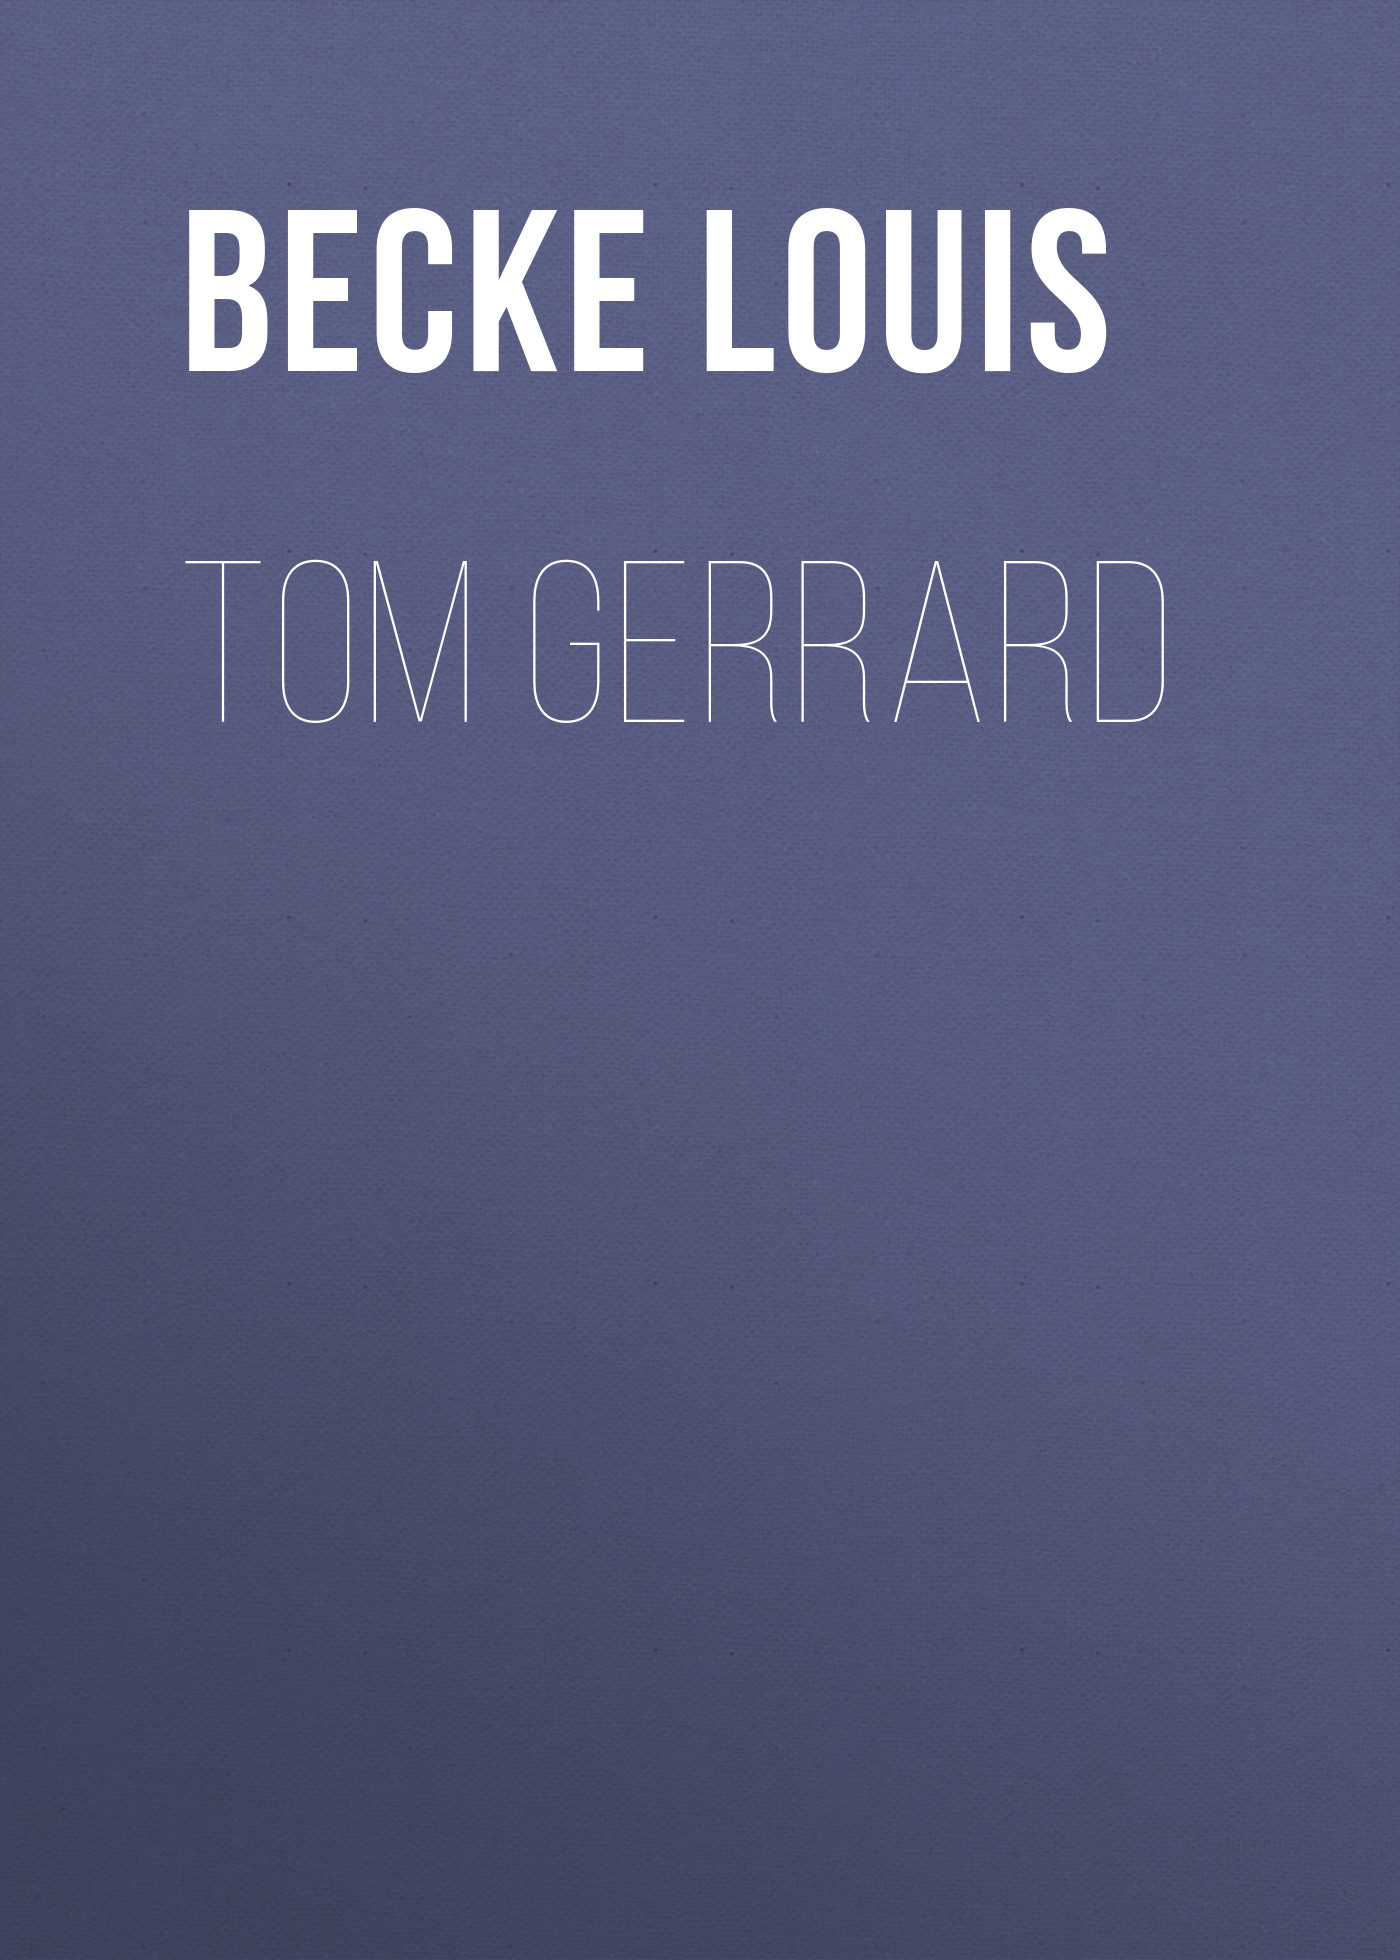 Книга Tom Gerrard из серии , созданная Louis Becke, может относится к жанру Зарубежная классика, Литература 19 века, Зарубежная старинная литература. Стоимость электронной книги Tom Gerrard с идентификатором 36367102 составляет 0 руб.